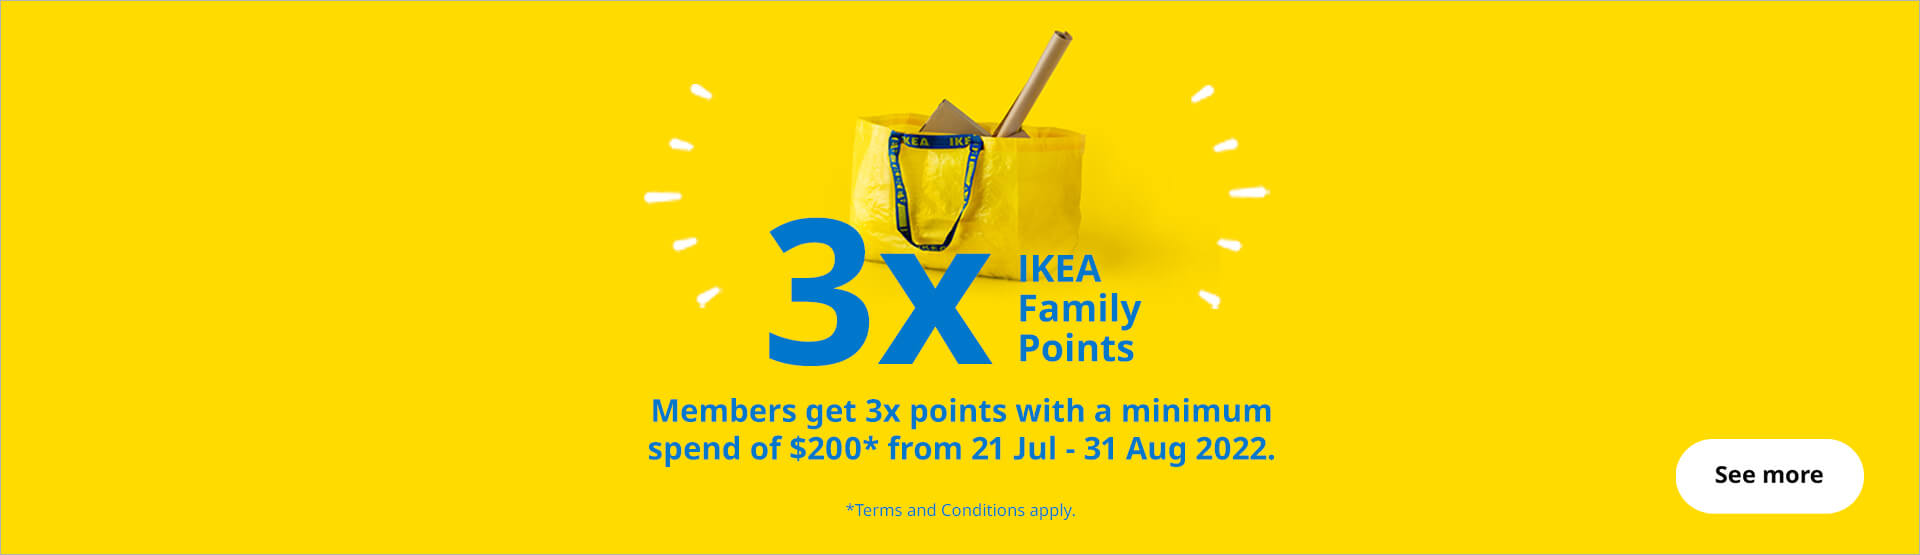 IKEA Family 3x Points Promo